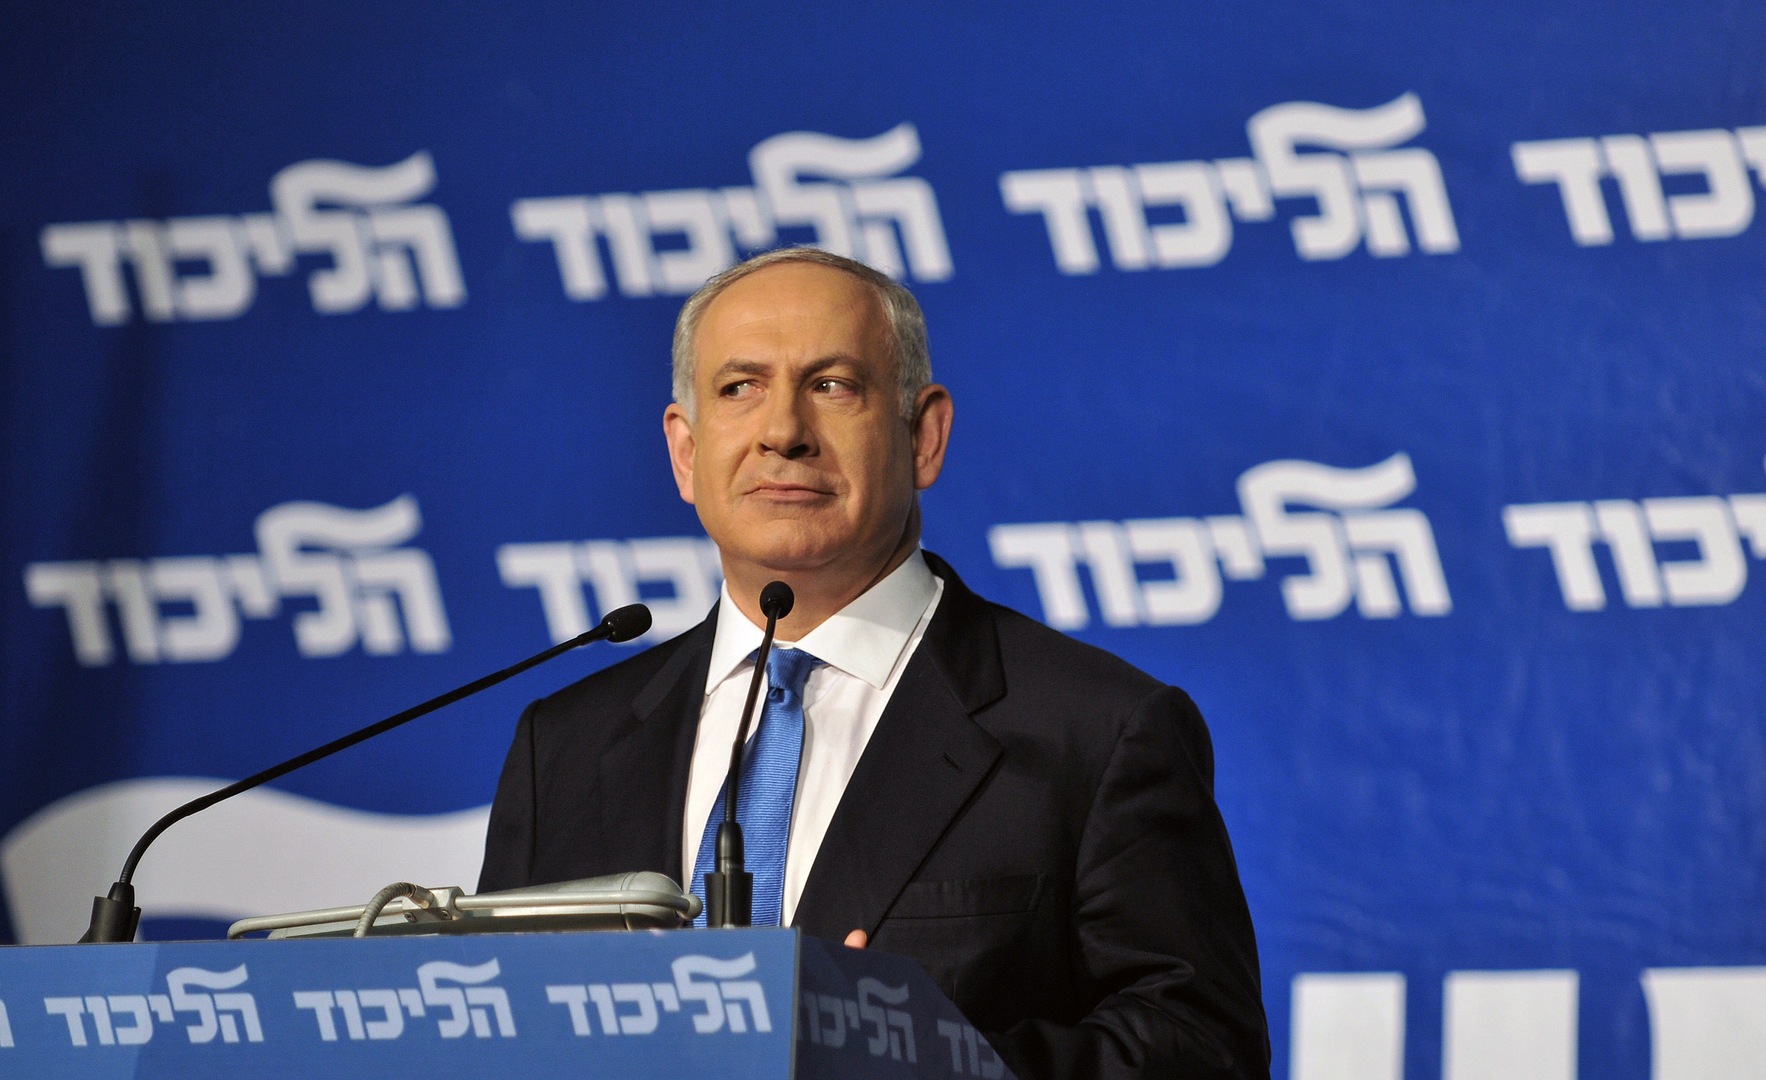 صورة من الأرشيف - رئيس الوزراء الإسرائيلي بنيامين نتنياهو